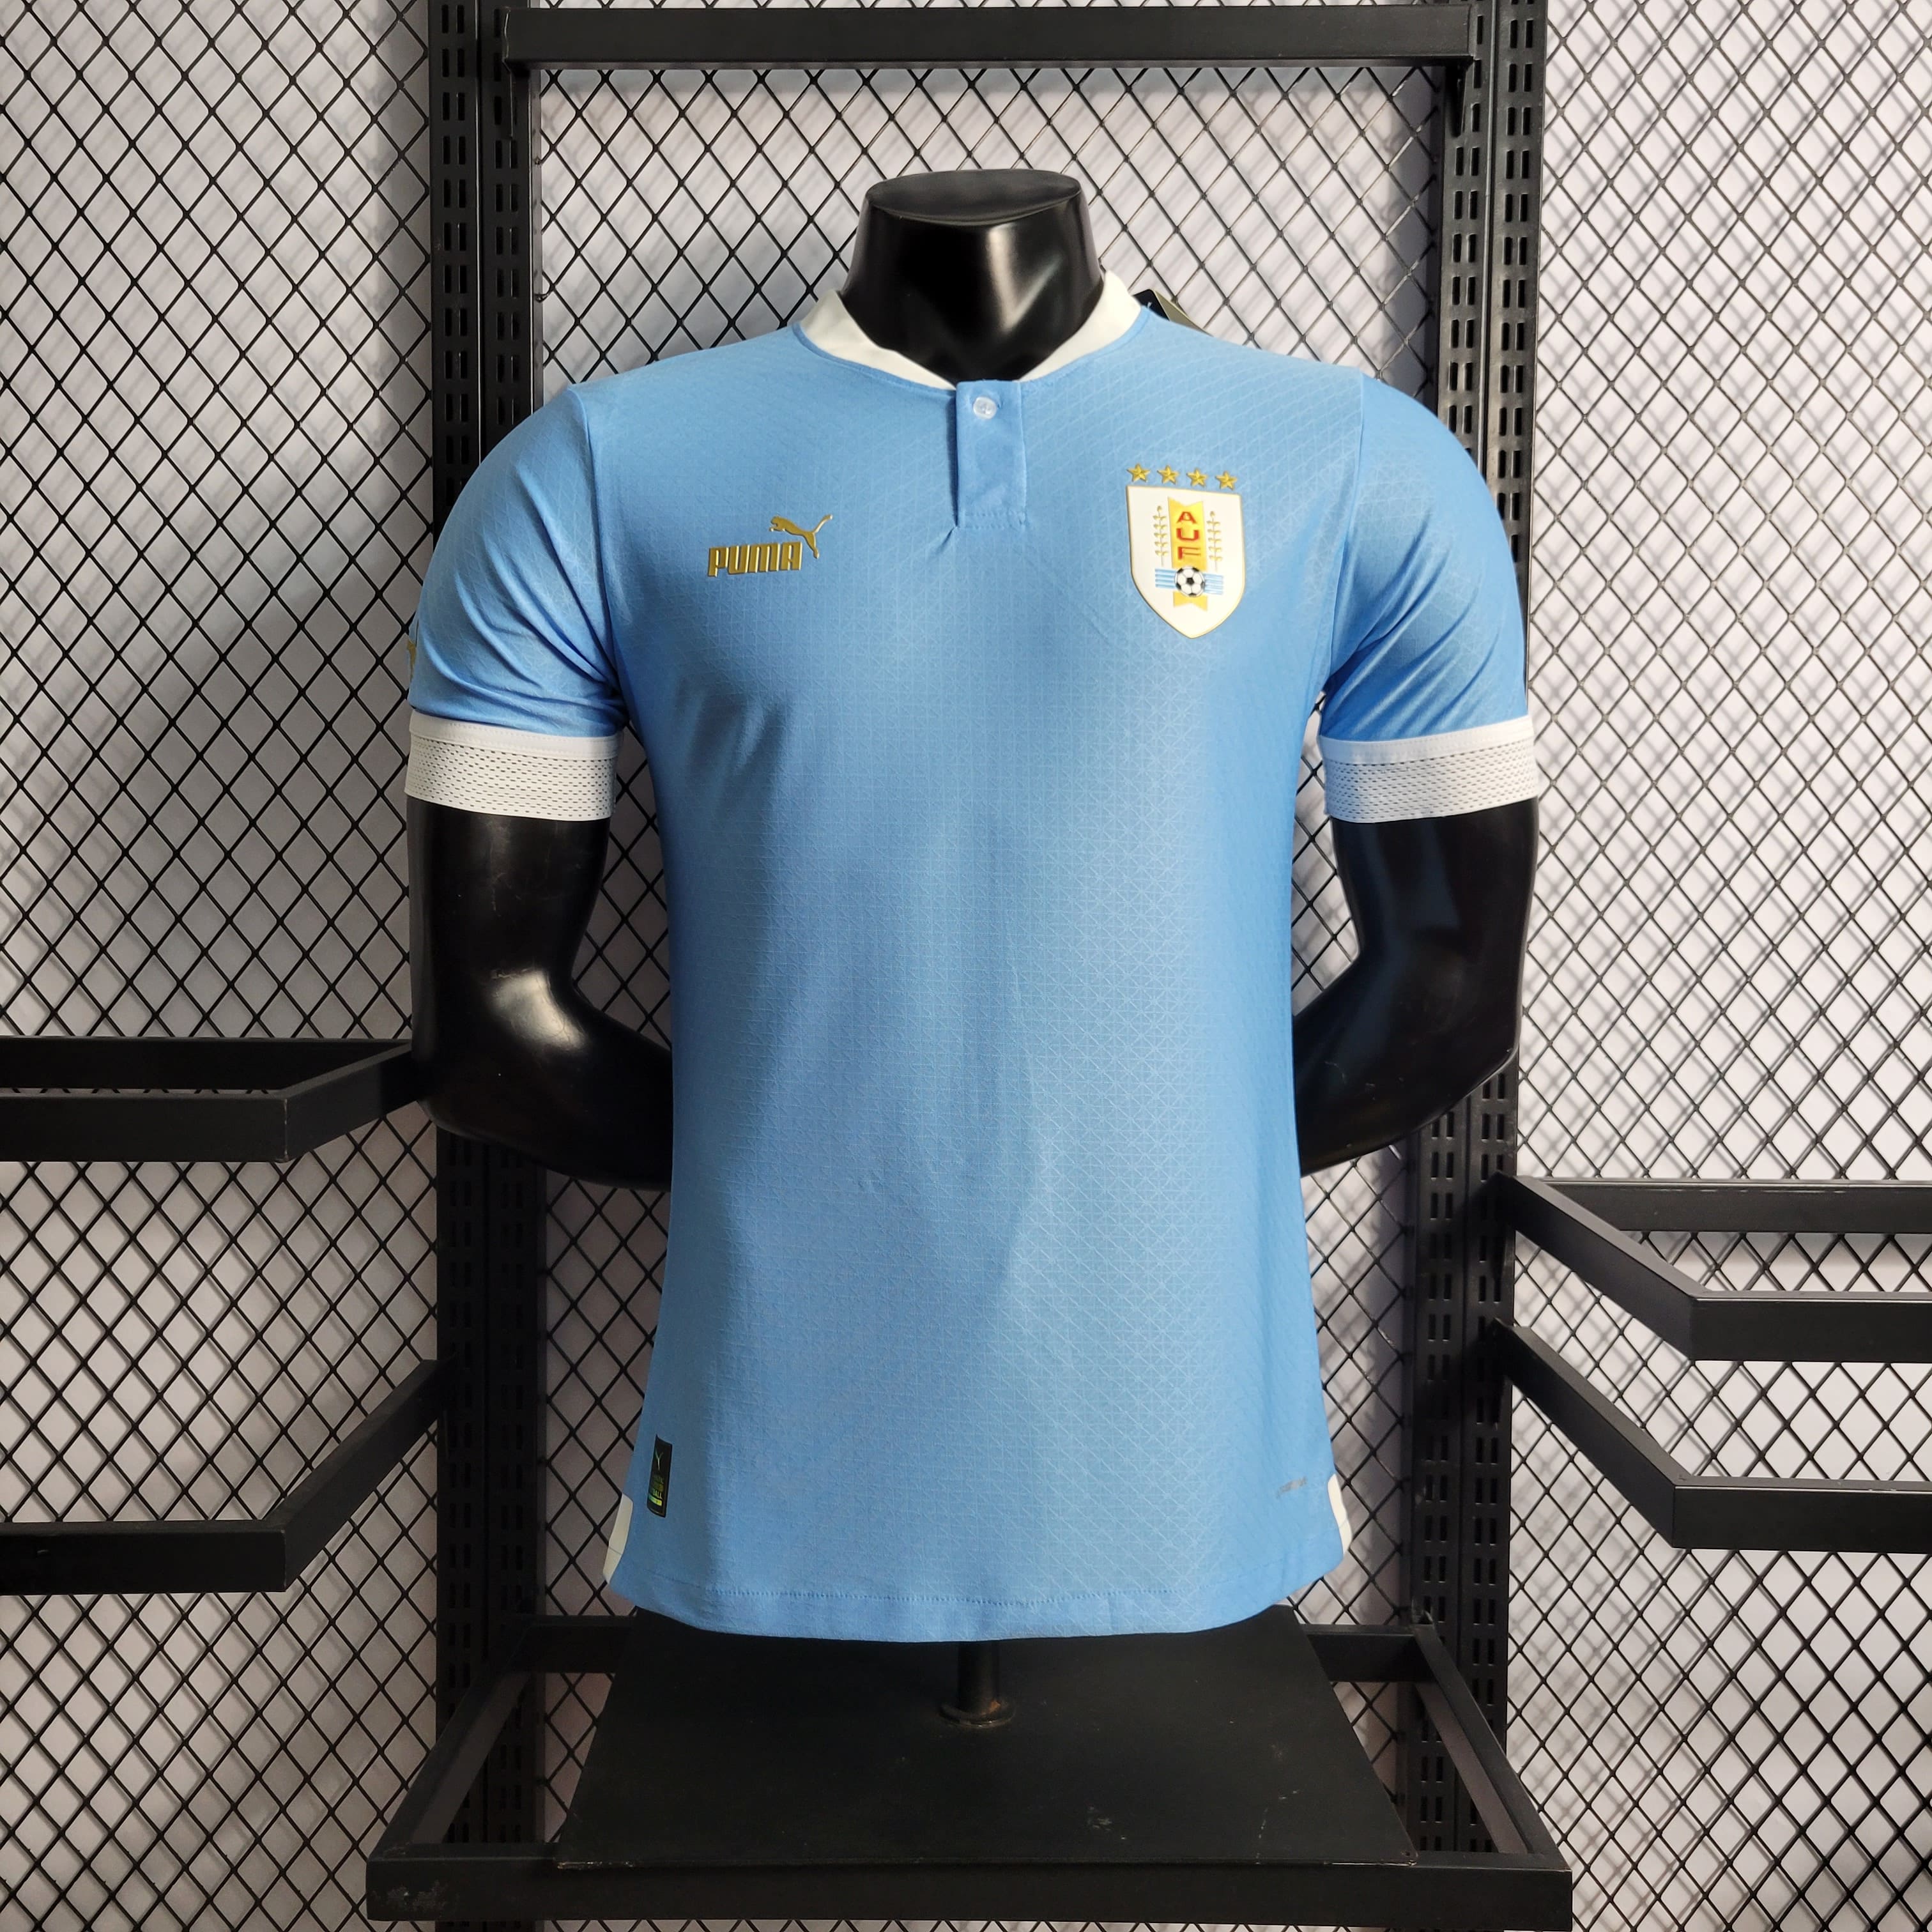 official uruguay soccer jersey